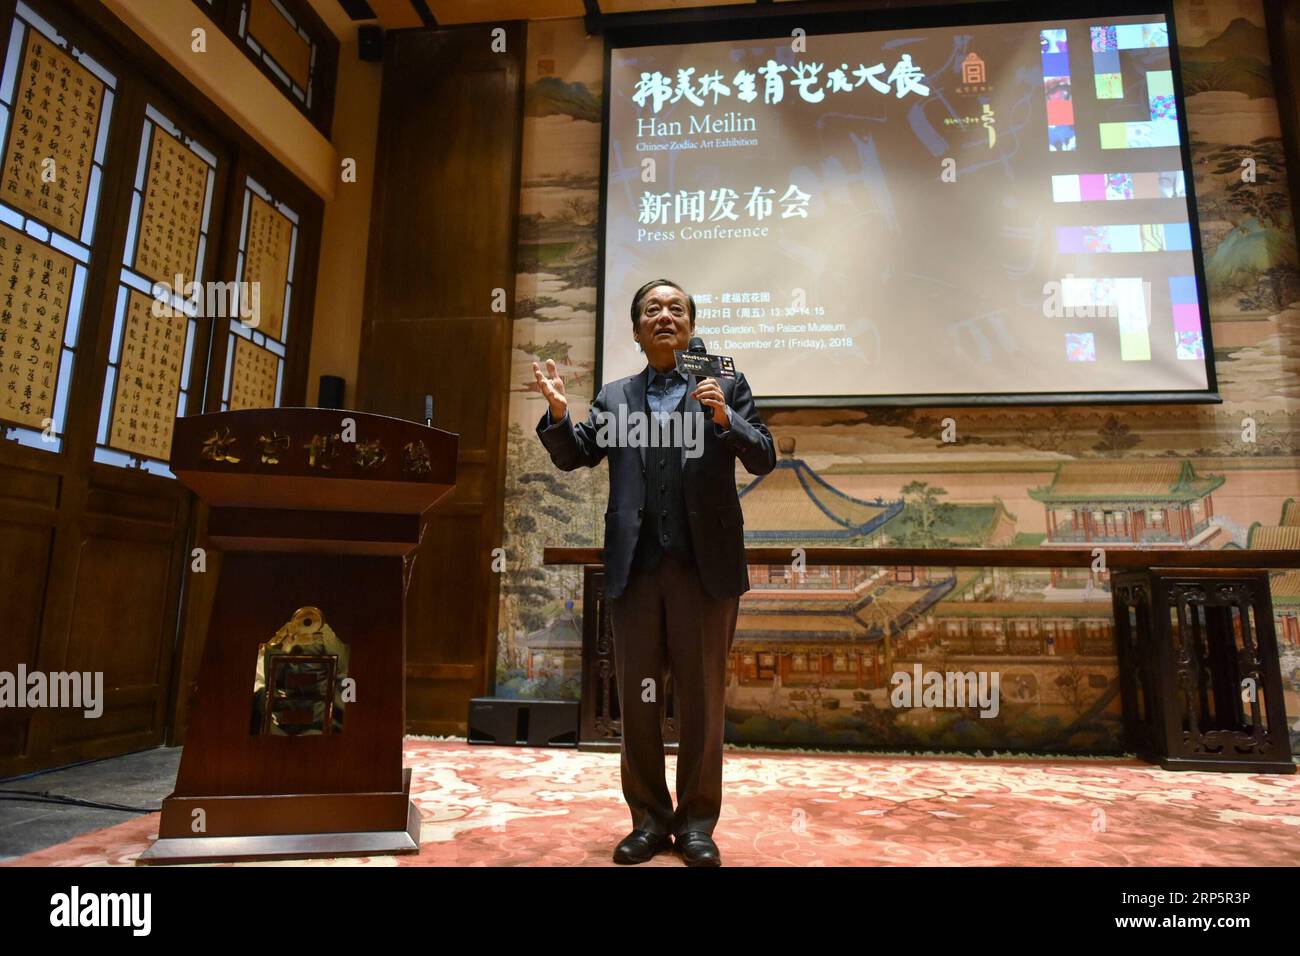 (181221) -- PECHINO, 21 dicembre 2018 (Xinhua) -- l'artista cinese Han Meilin parla a una conferenza stampa sulla sua Chinese Zodiac Art Exhibition al Palace Museum di Pechino, capitale della Cina, 21 dicembre 2018. La mostra d'arte cinese dello zodiaco, che espone opere d'arte del pittore, scultore e designer cinese Han Meilin, è prevista per il 5 gennaio 2019. (Xinhua/li Mangmang) (InPalaceMuseum) CHINA-BEIJING-PALACE MUSEUM-HAN MEILIN CHINESE ZODIAC ART EXHIBITION (CN) PUBLICATIONxNOTxINxCHN Foto Stock